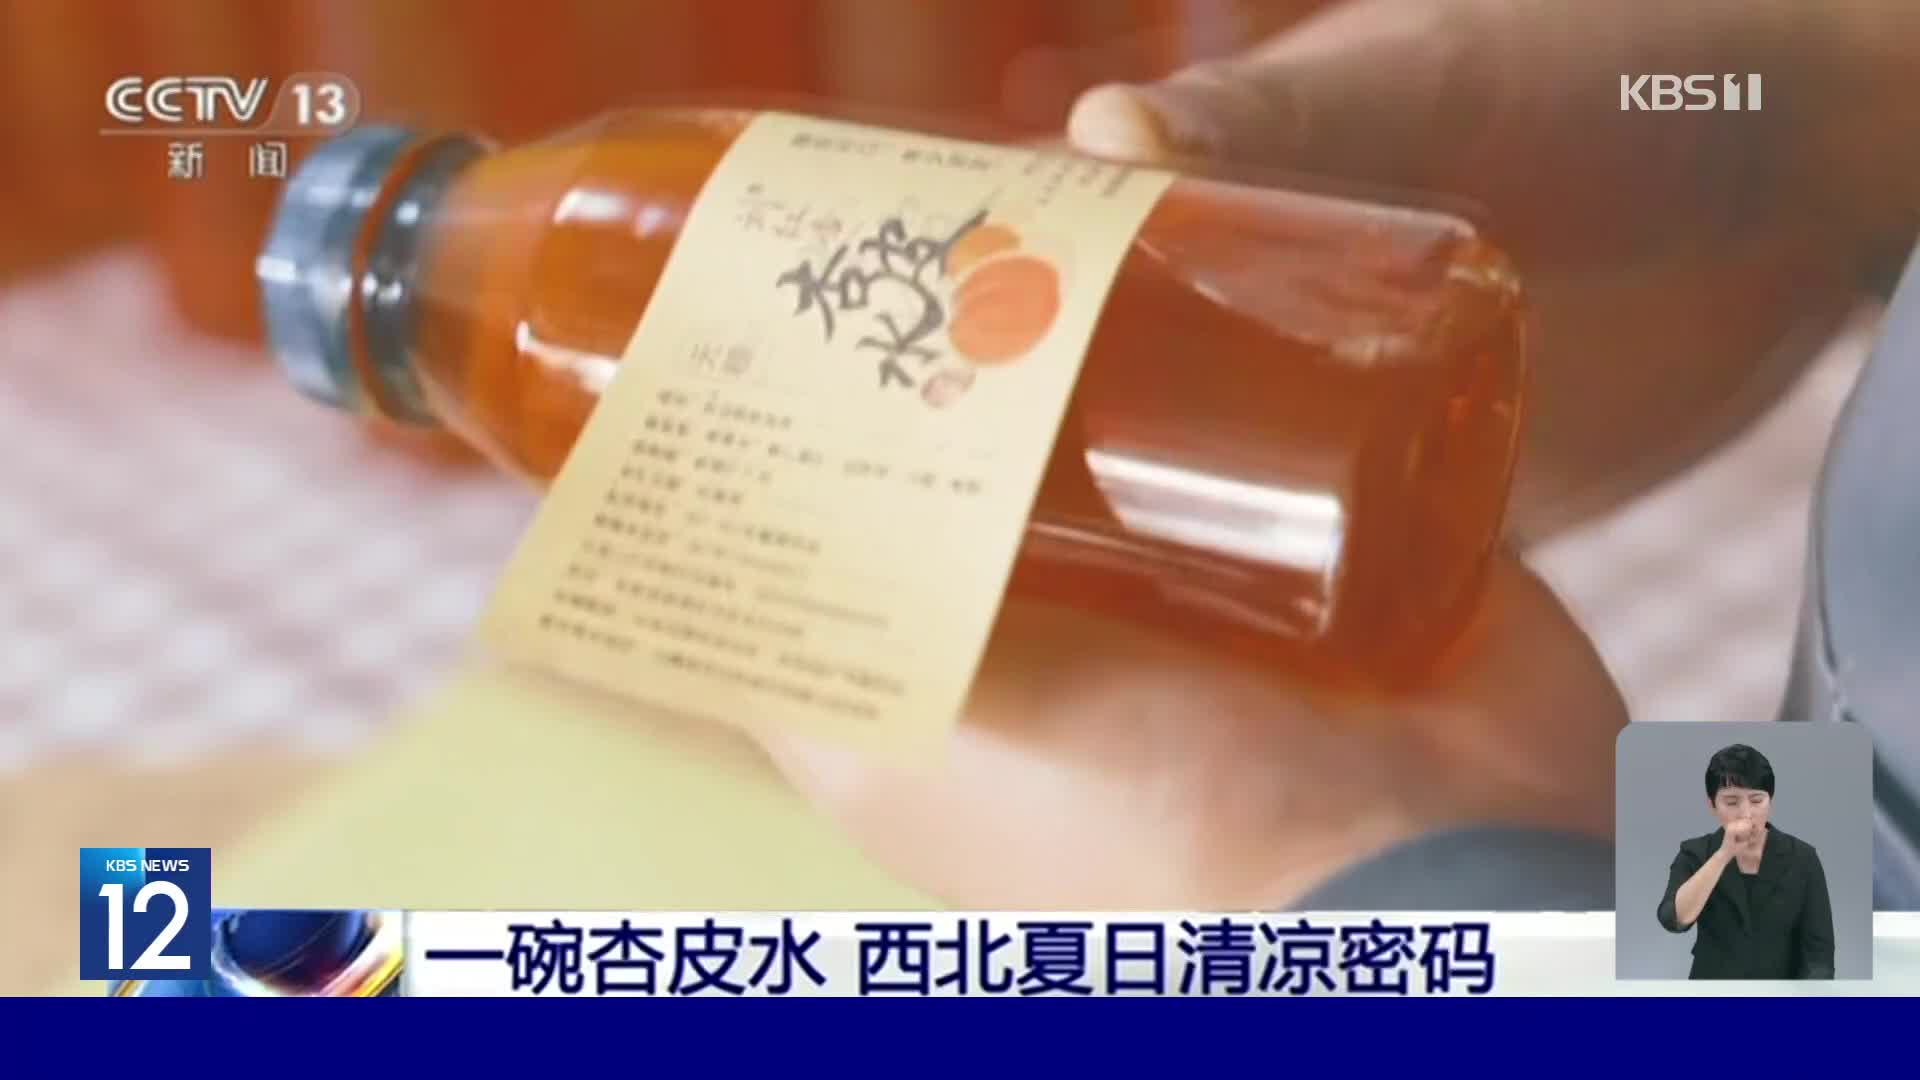 무더위 날리는 중국의 ‘특색 음료’